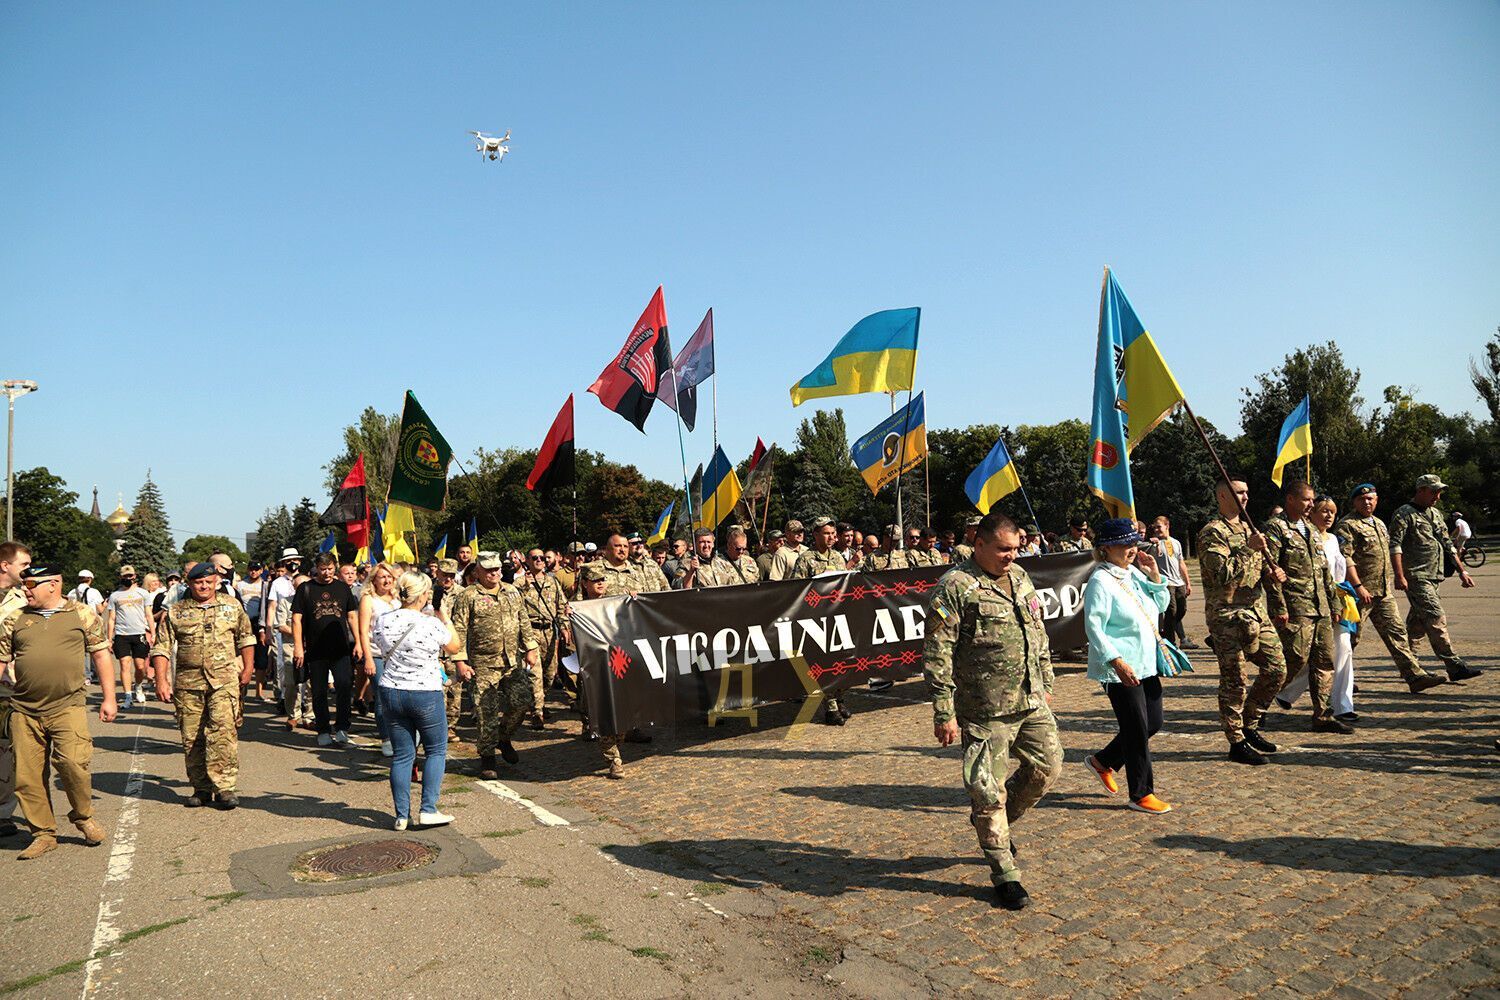 Марш захисників в Одесі